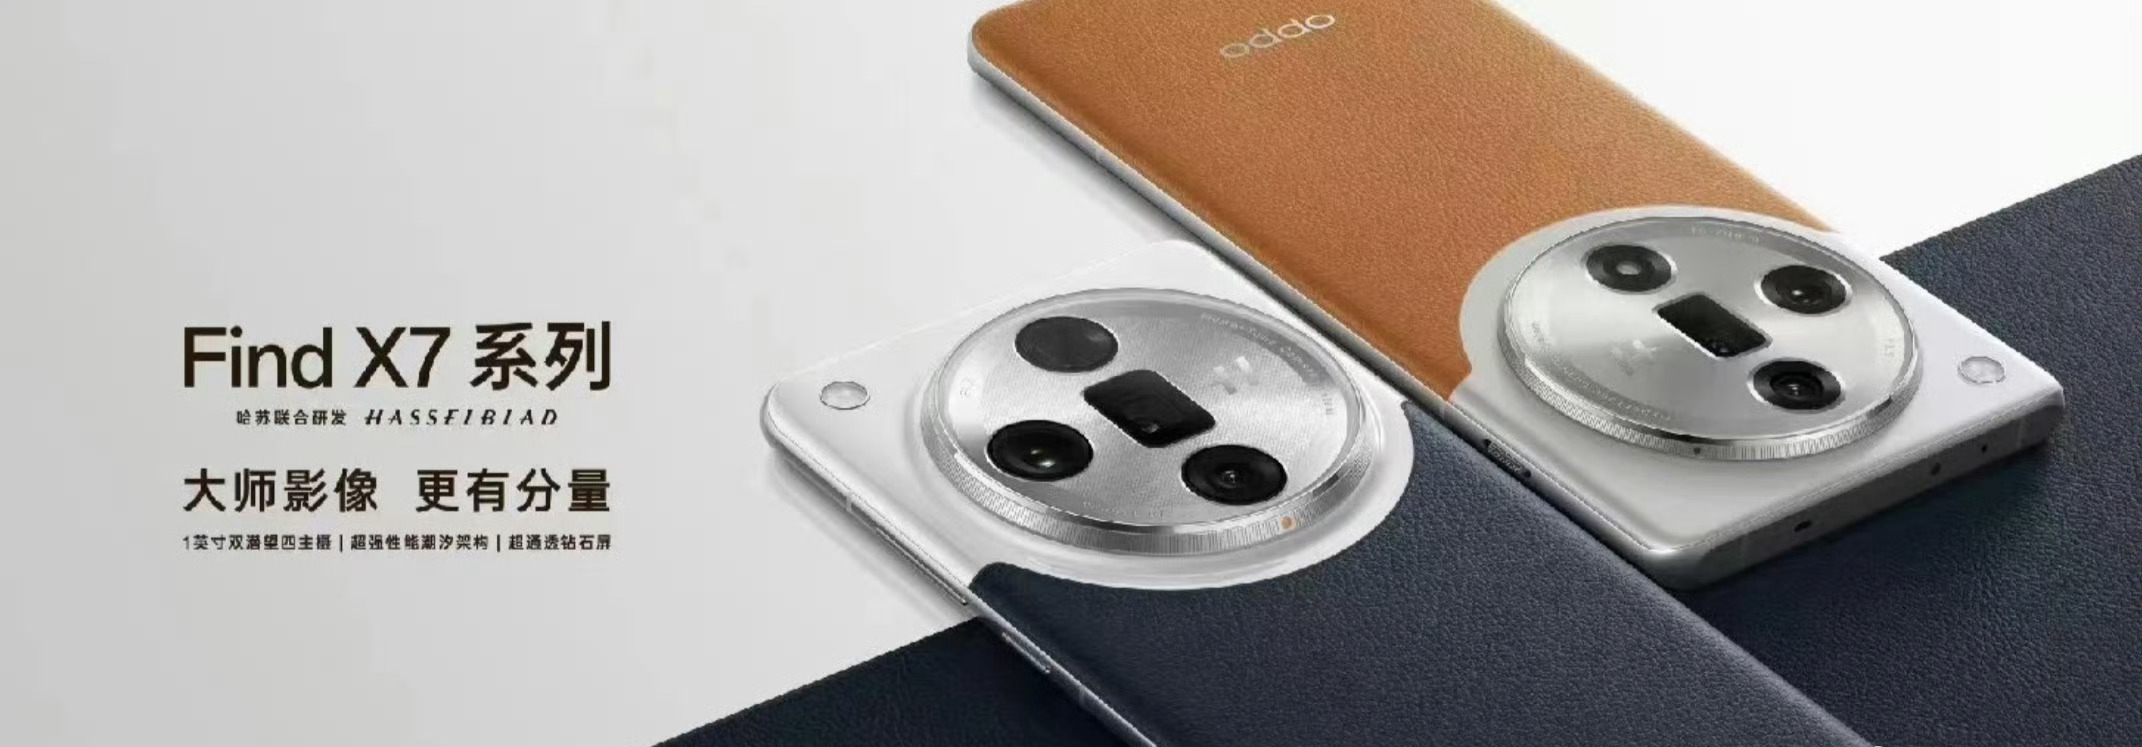 Resim kredisi - Weibo - Son sızıntılar Oppo Find X7 Serisi kamera özelliklerine ve tasarımına yeni ışık tutuyor